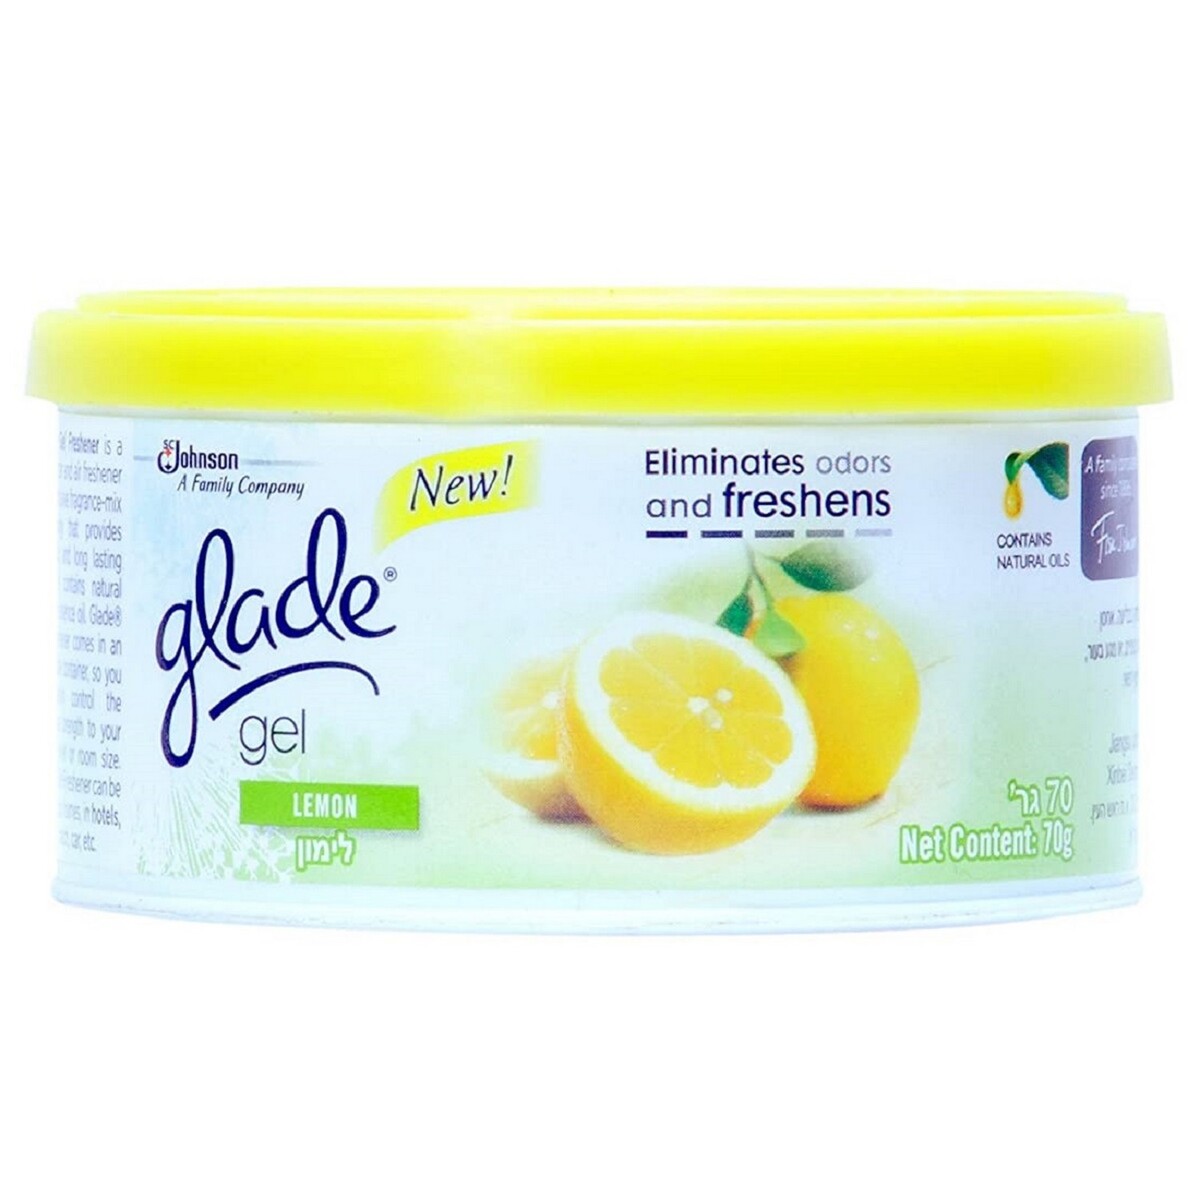 Glade Gel Air Fresh Lemon 60gm